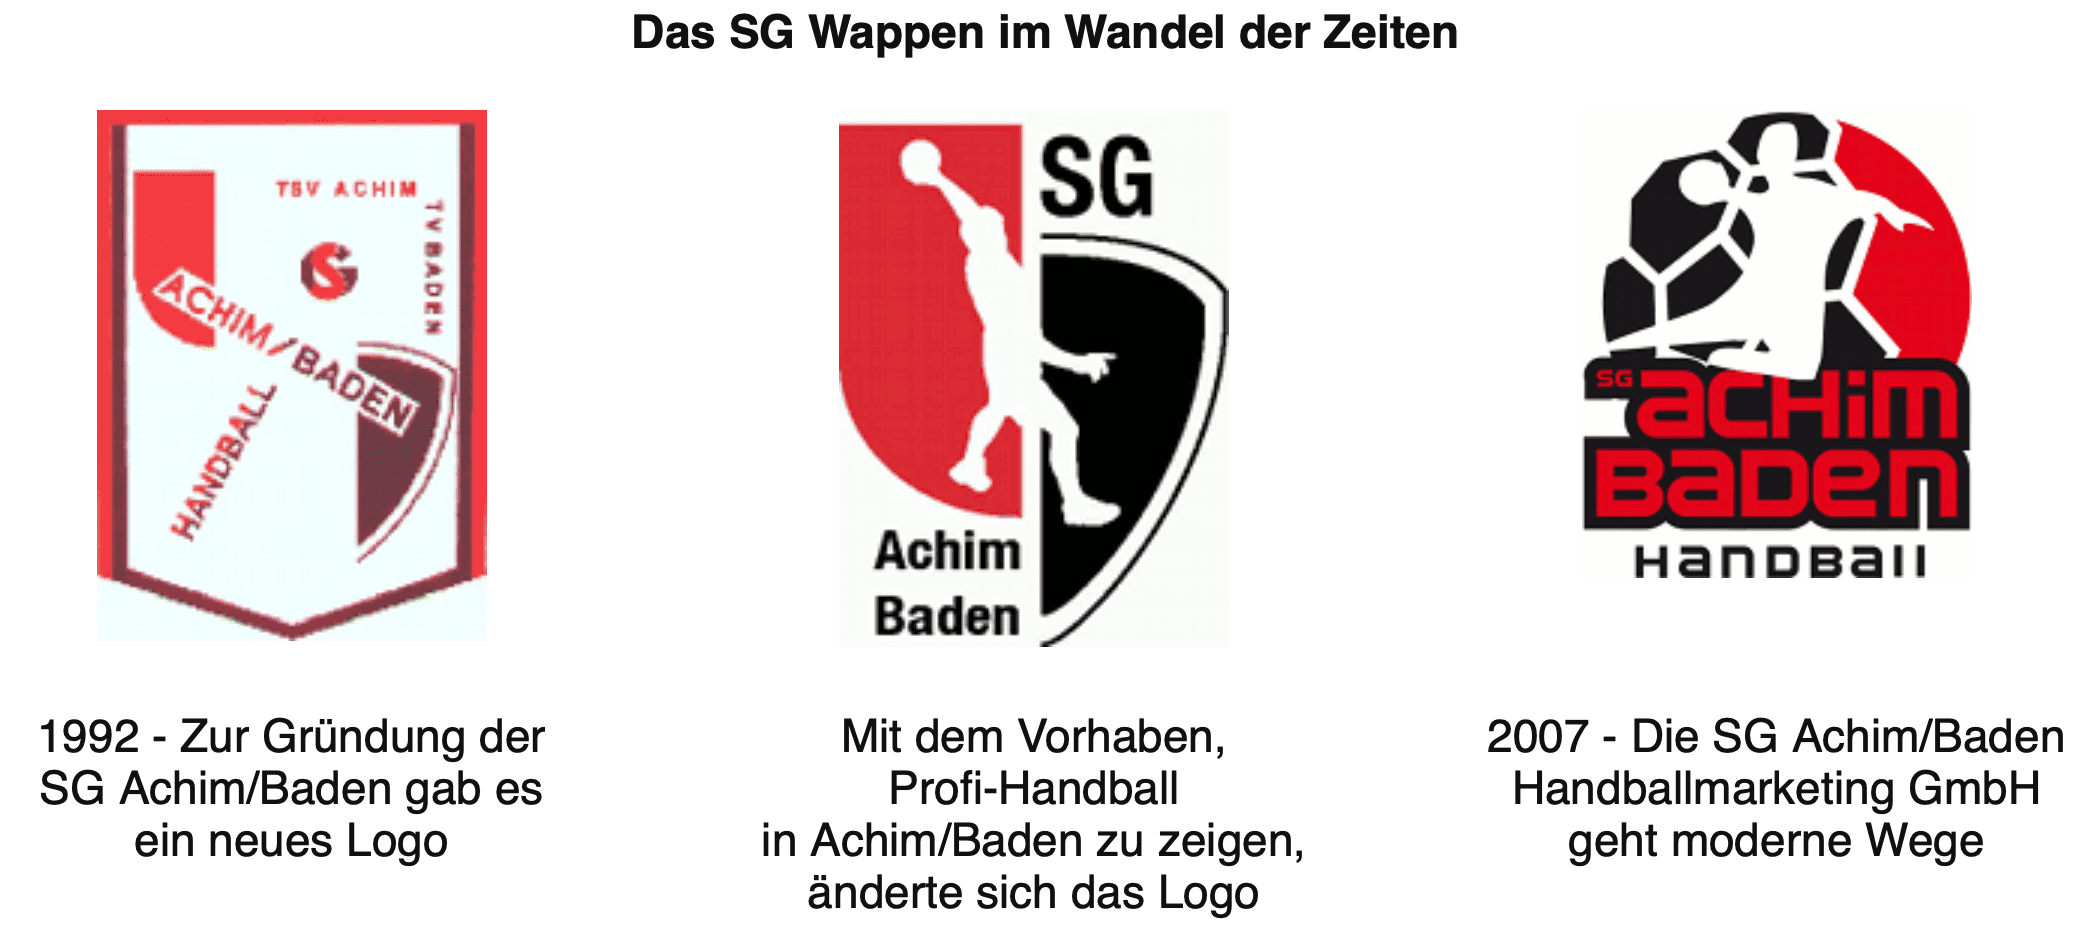 Die Wappern der SG Achim/Baden